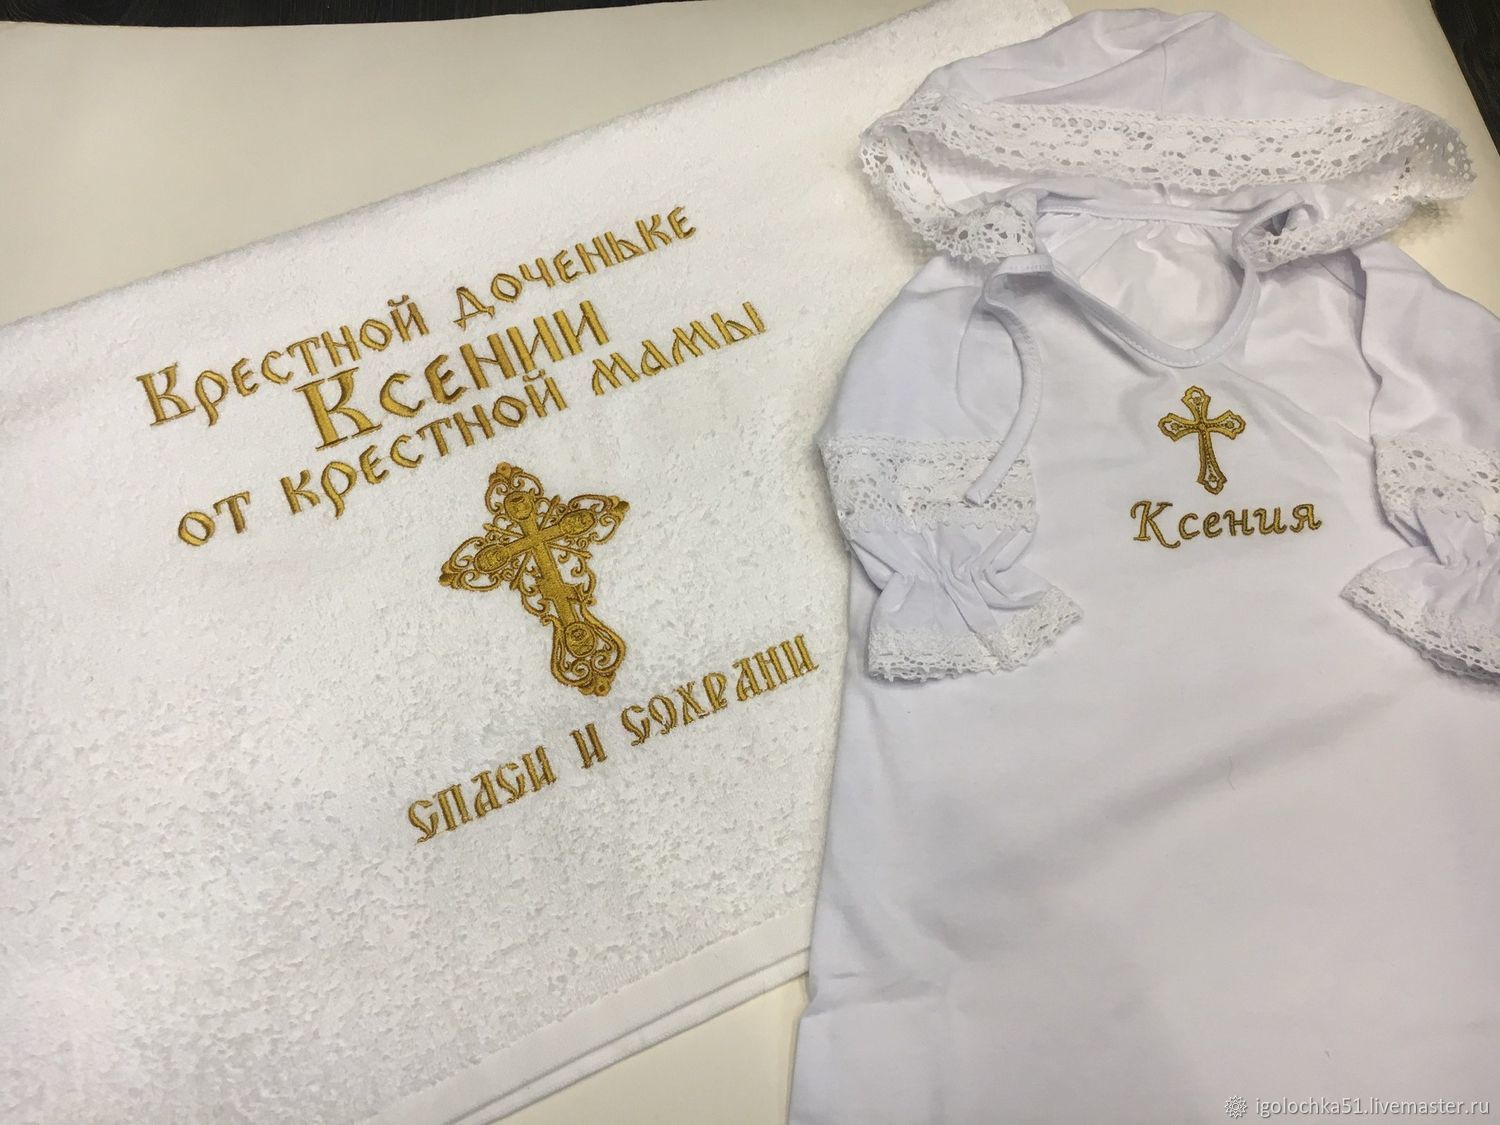 Полотенце после крещения. Вышивка на полотенце крещение. Крестильное полотенце с вышивкой. Рушник для крещения. Именное полотенце для крещения.